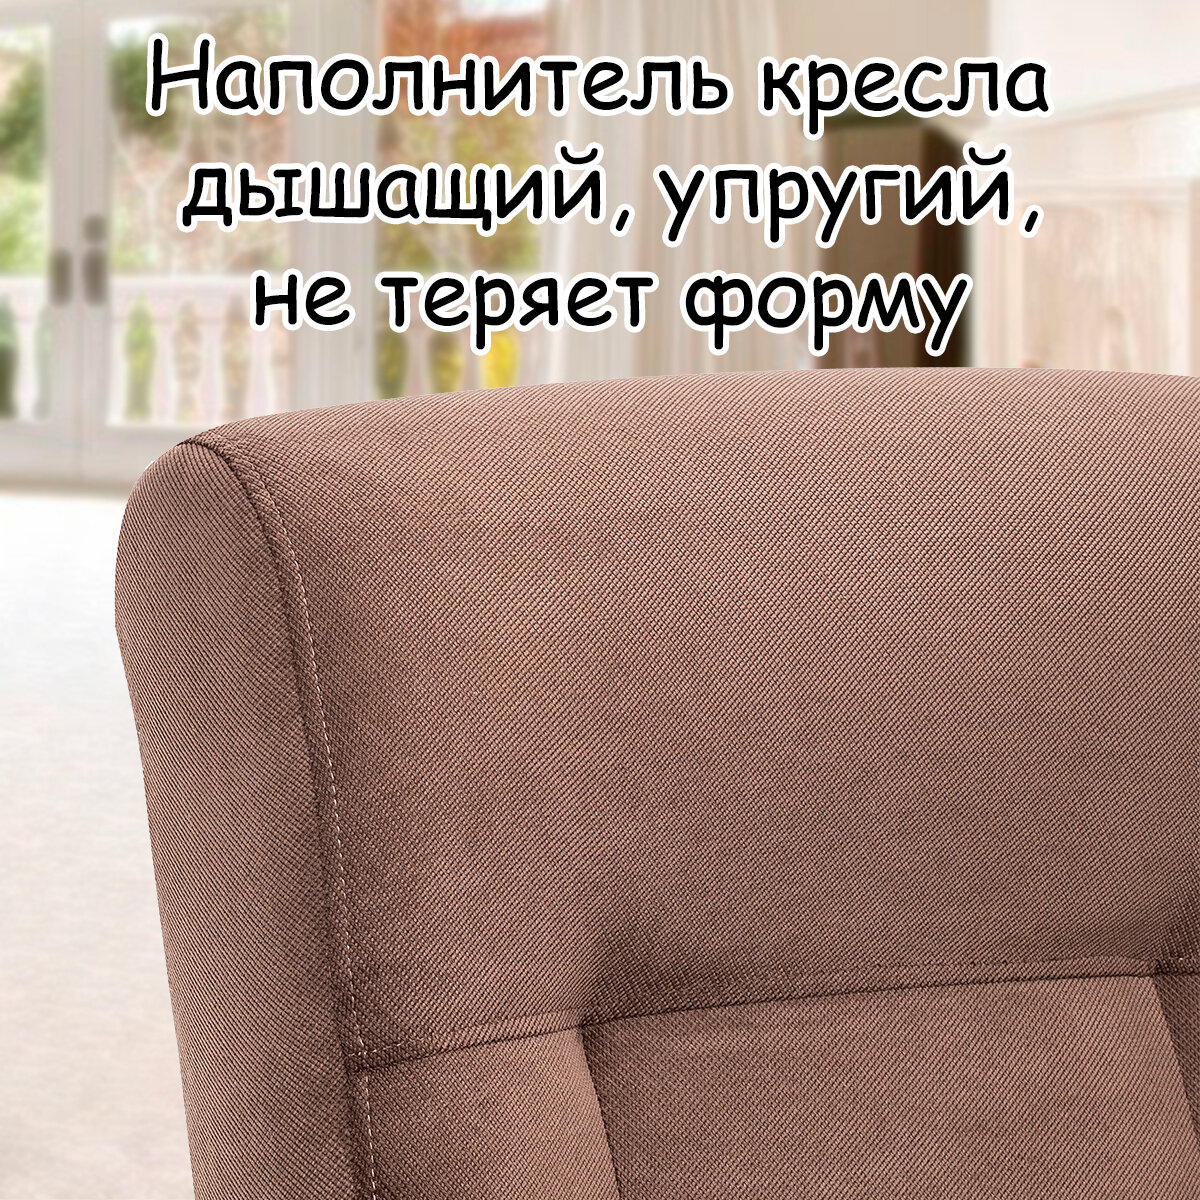 Кресло для взрослых 58.5х87х99 см, модель 51, verona, цвет: Brown (коричневый), каркас: Venge (черный) - фотография № 6